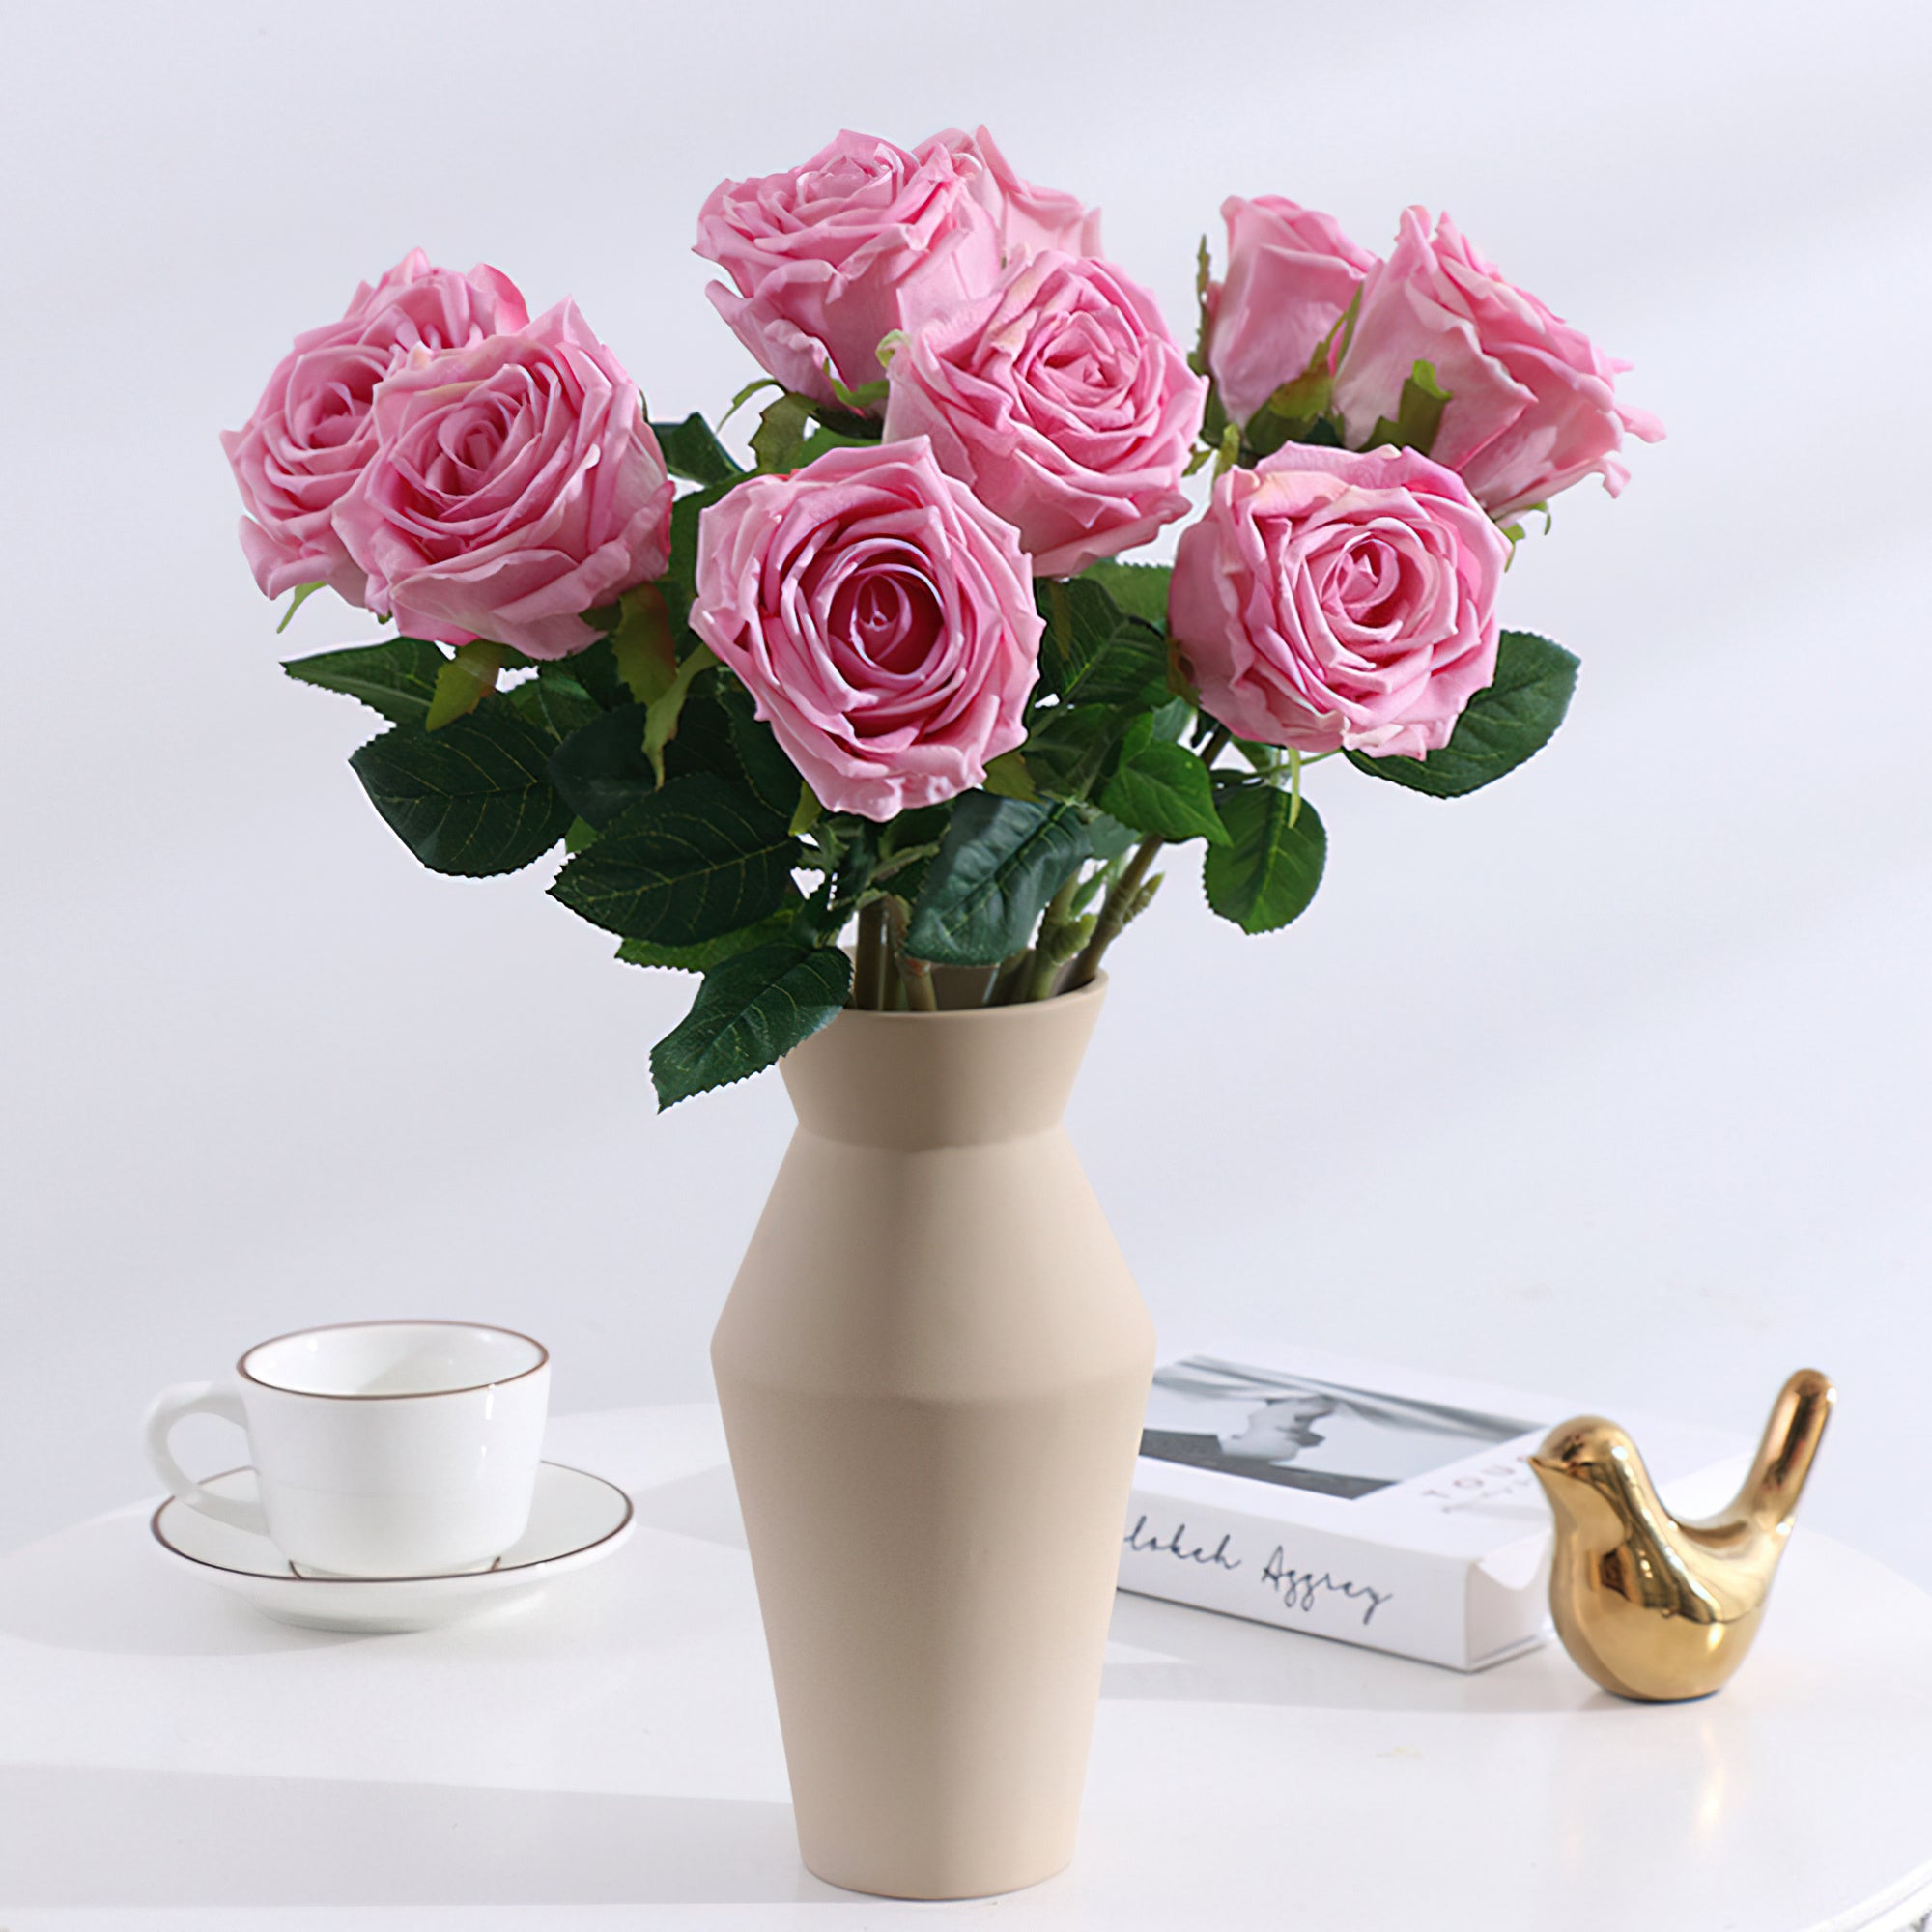 Faux bouquet de roses de style européen – Roses artificielles de qualité supérieure au toucher riche en humidité pour la décoration de la maison, du salon et de la salle à manger – Embellissements de mariage élégants et accessoires de luxe